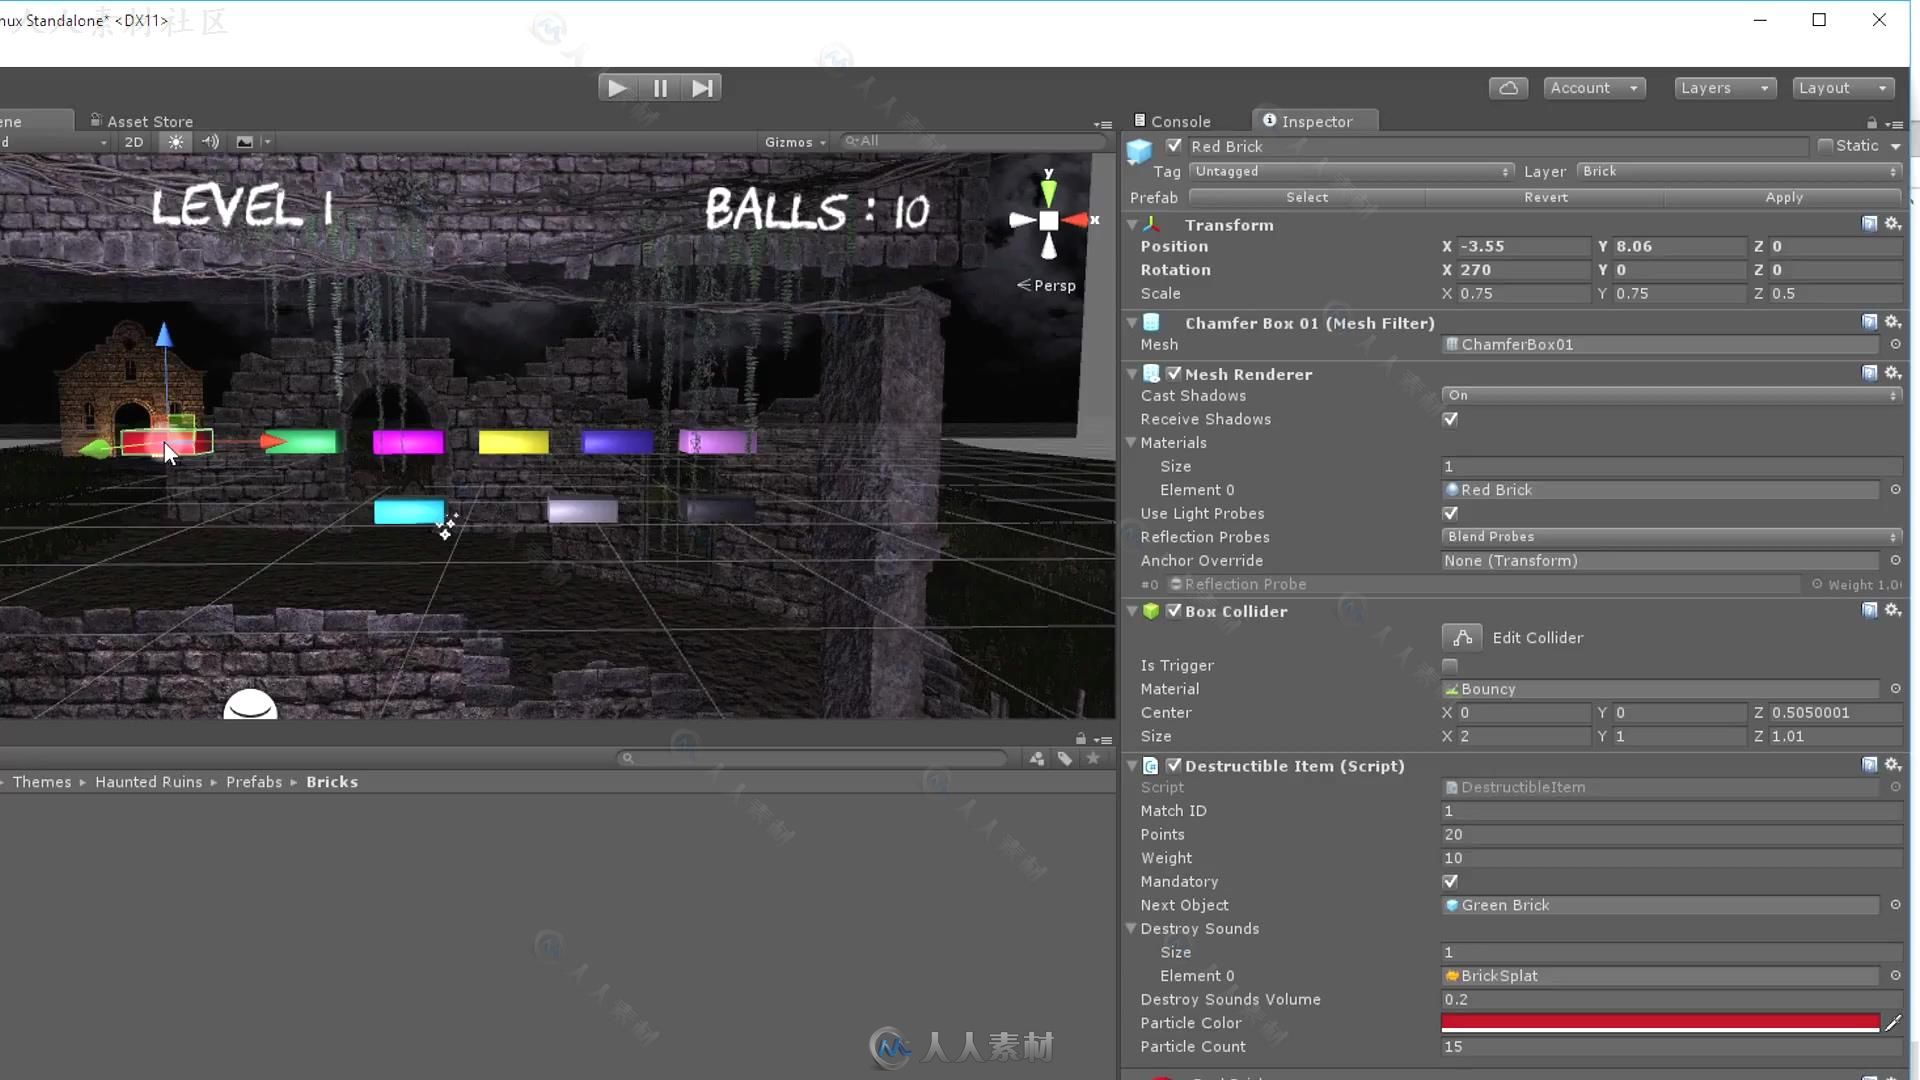 Unity 5商业游戏项目实例制作视频教程第三季